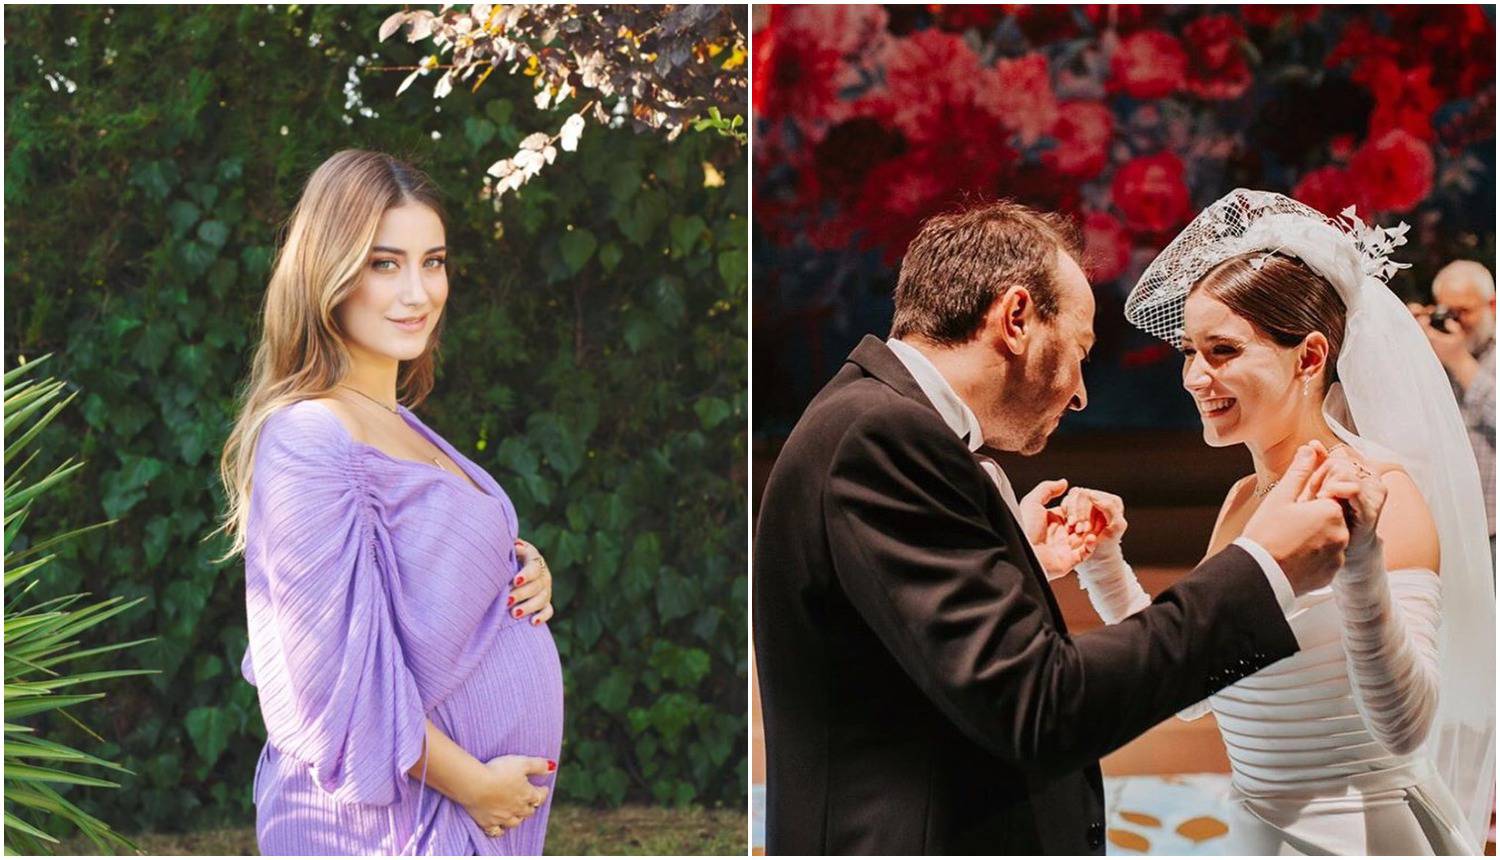 Dobra godina: Turska zvijezda 'Feriha' rodila sina i udala se